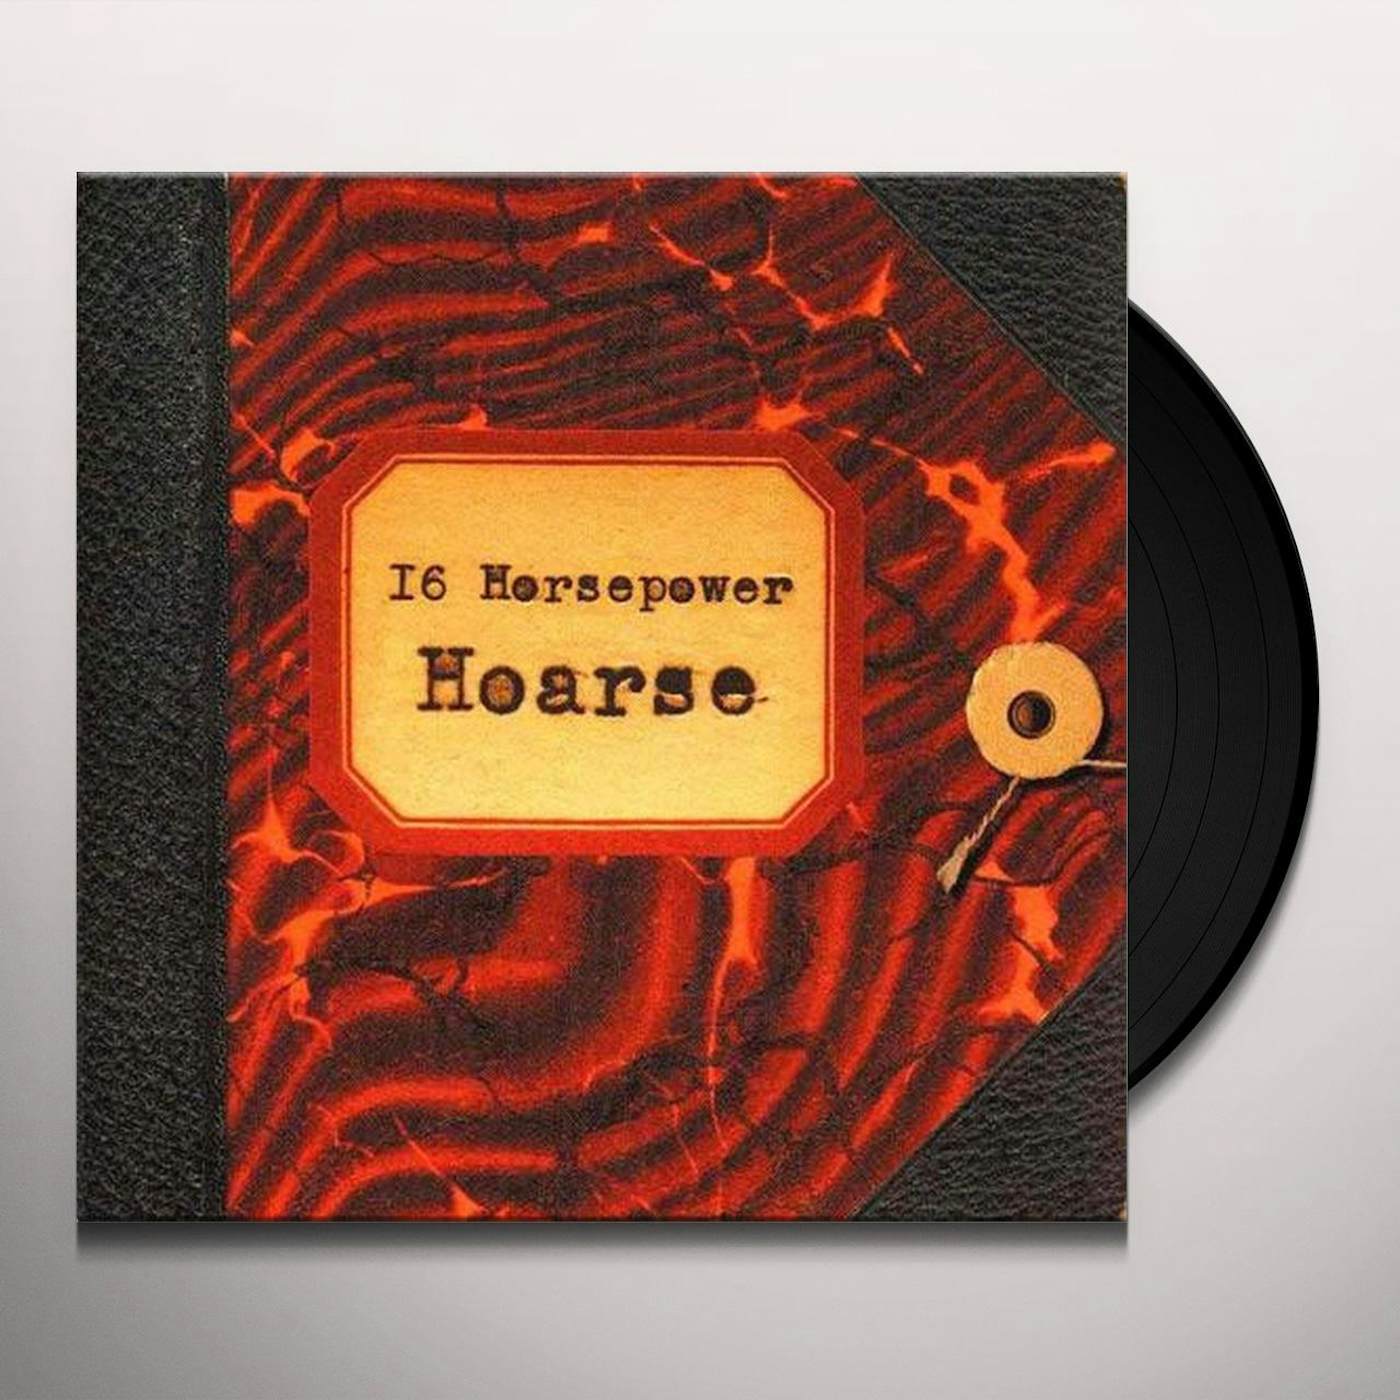 16 Horsepower Hoarse Vinyl Record